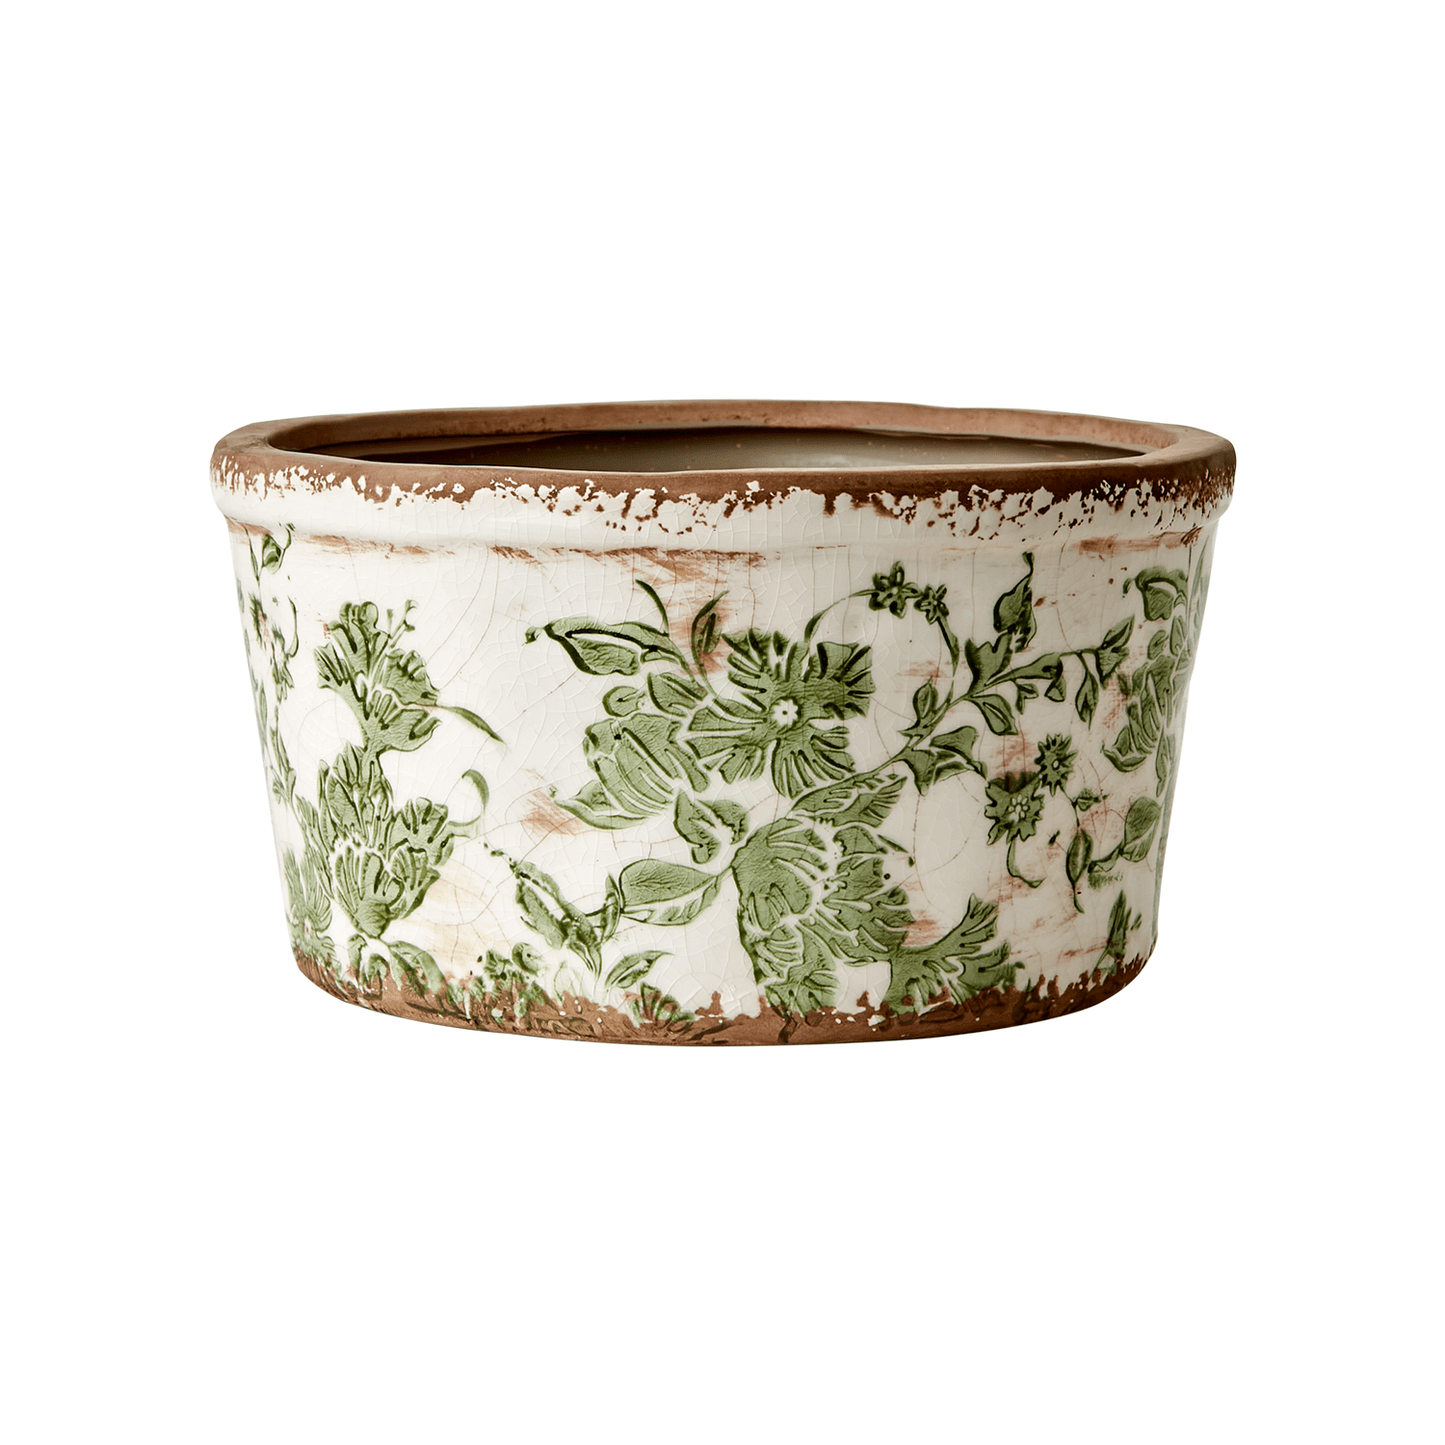 En lav blomsterpotte fra Affari i keramikk med et vakkert grønt mønster og vintage preg, alle er unike. Fyll den med dine favoritt planter og blomster. Dekorer både hjemmet og hytta.